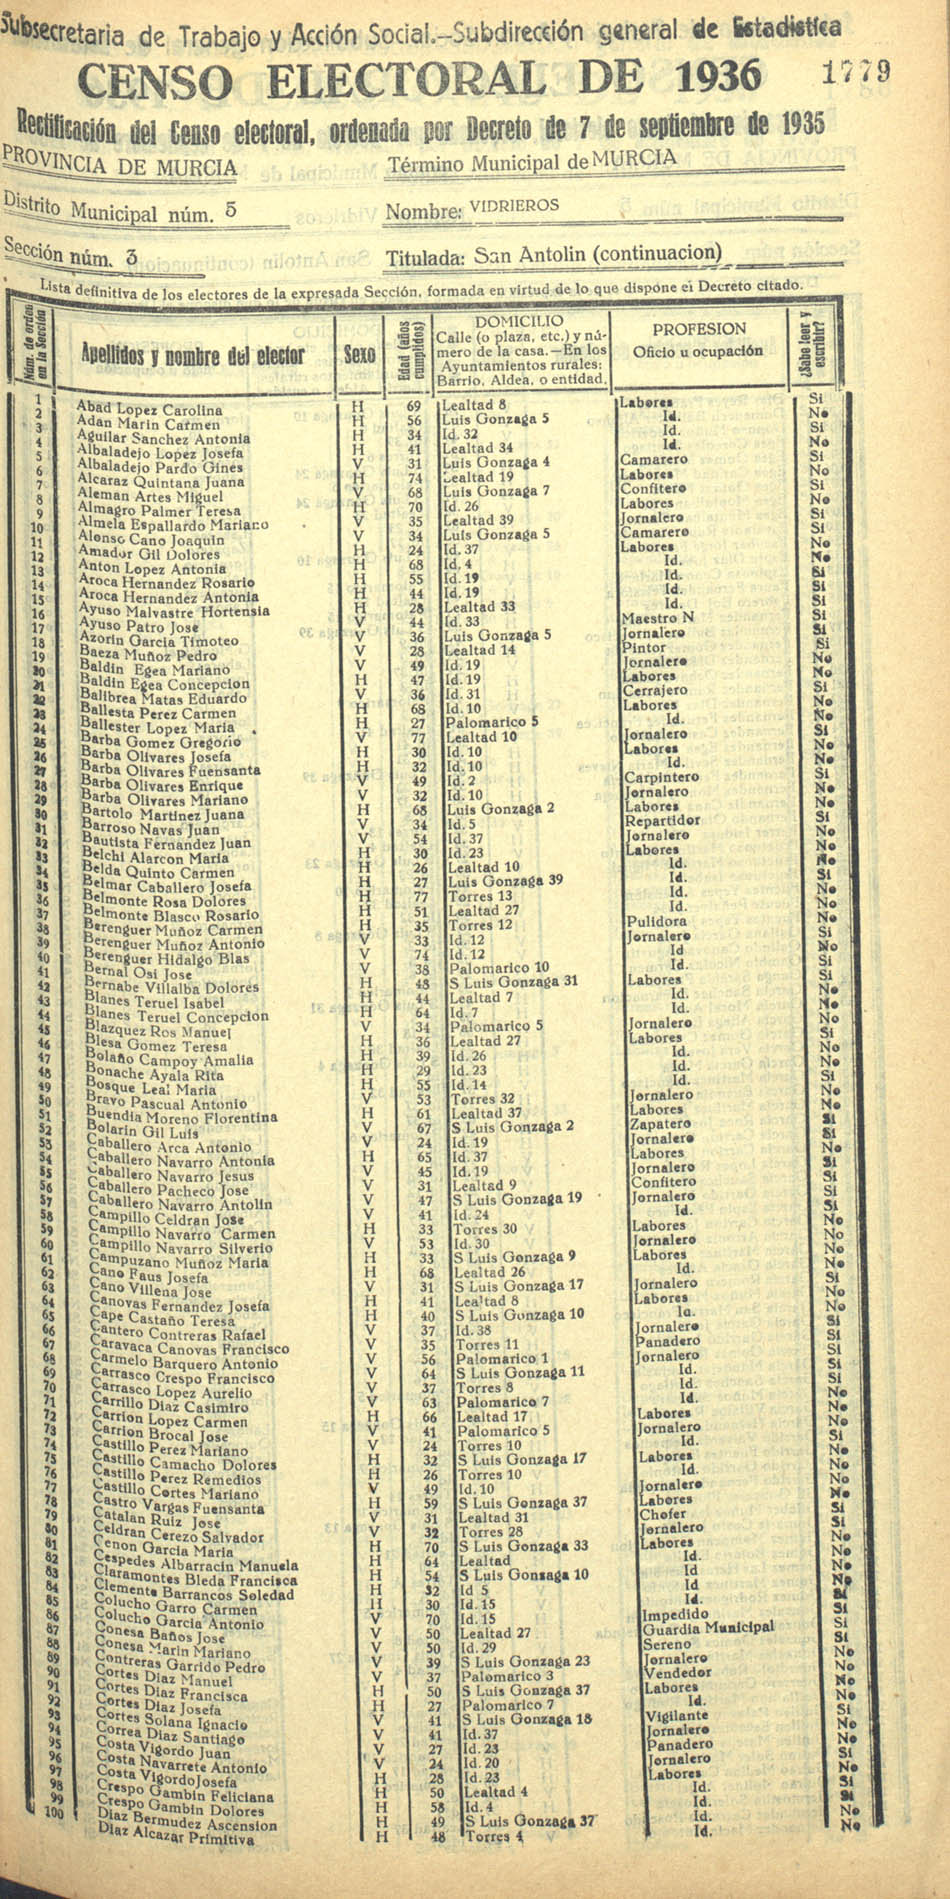 Censo electoral provincial de 1936. Murcia. Distrito 5º, Vidrieros. Sección 3ª, San Antolín (continuación)